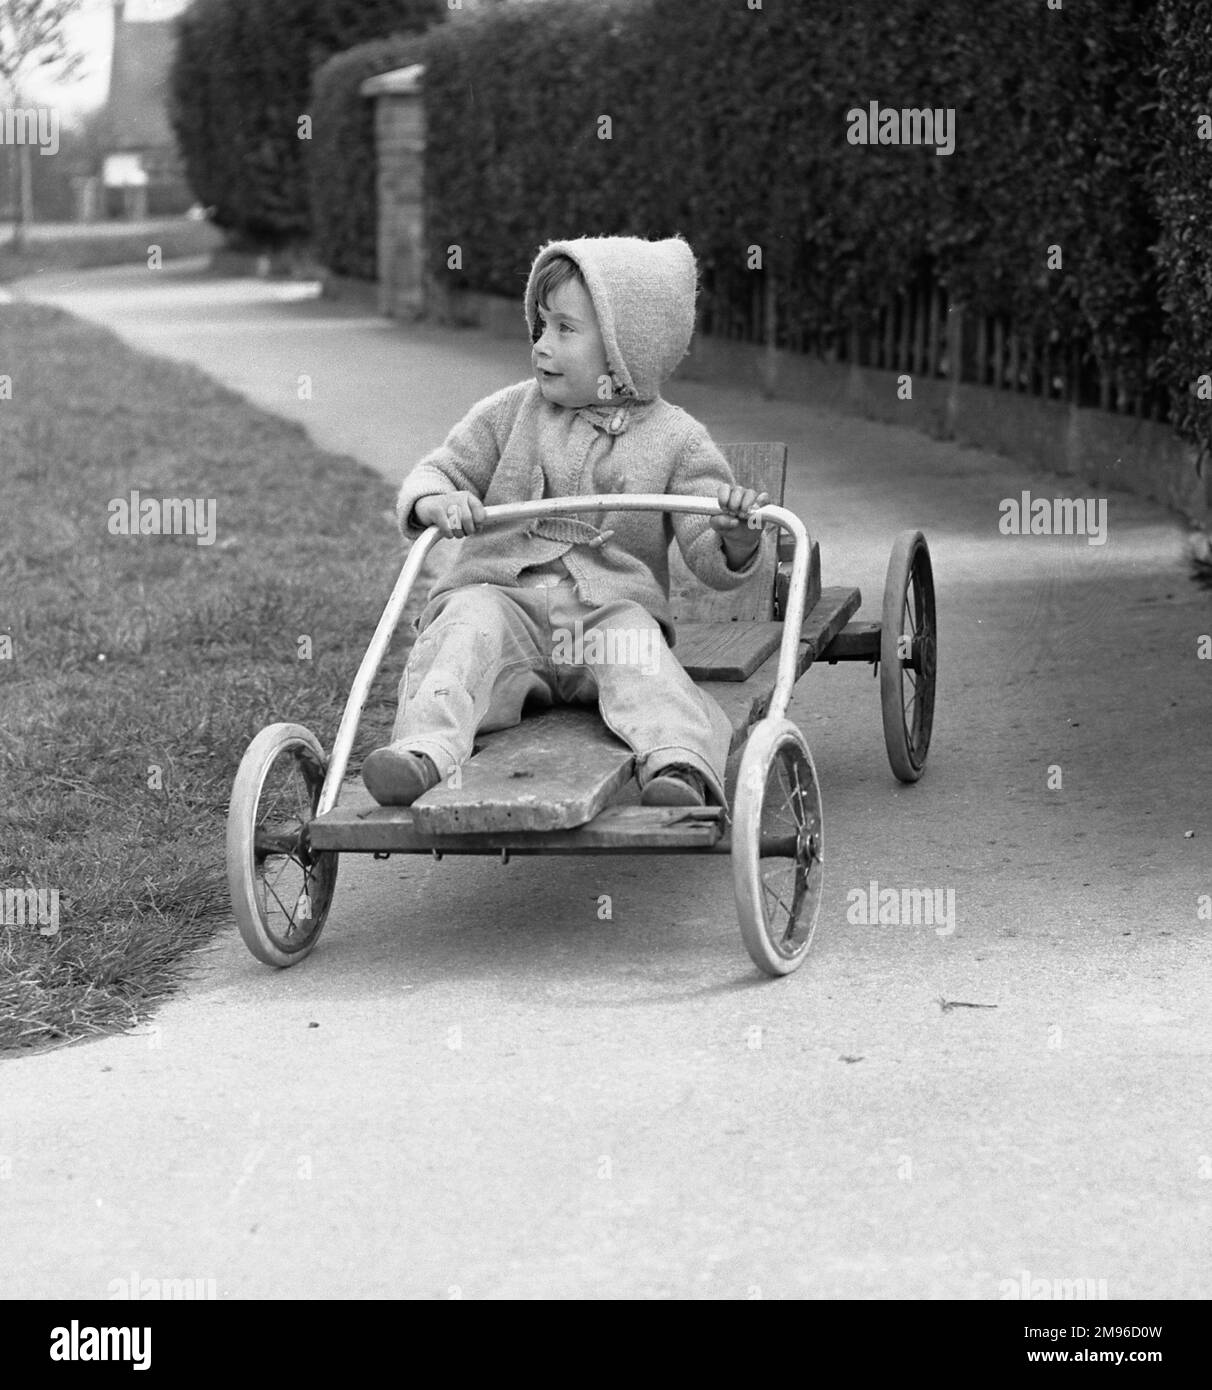 Un ragazzino che cavalca su un go-kart negozia una curva nel sentiero. Foto Stock